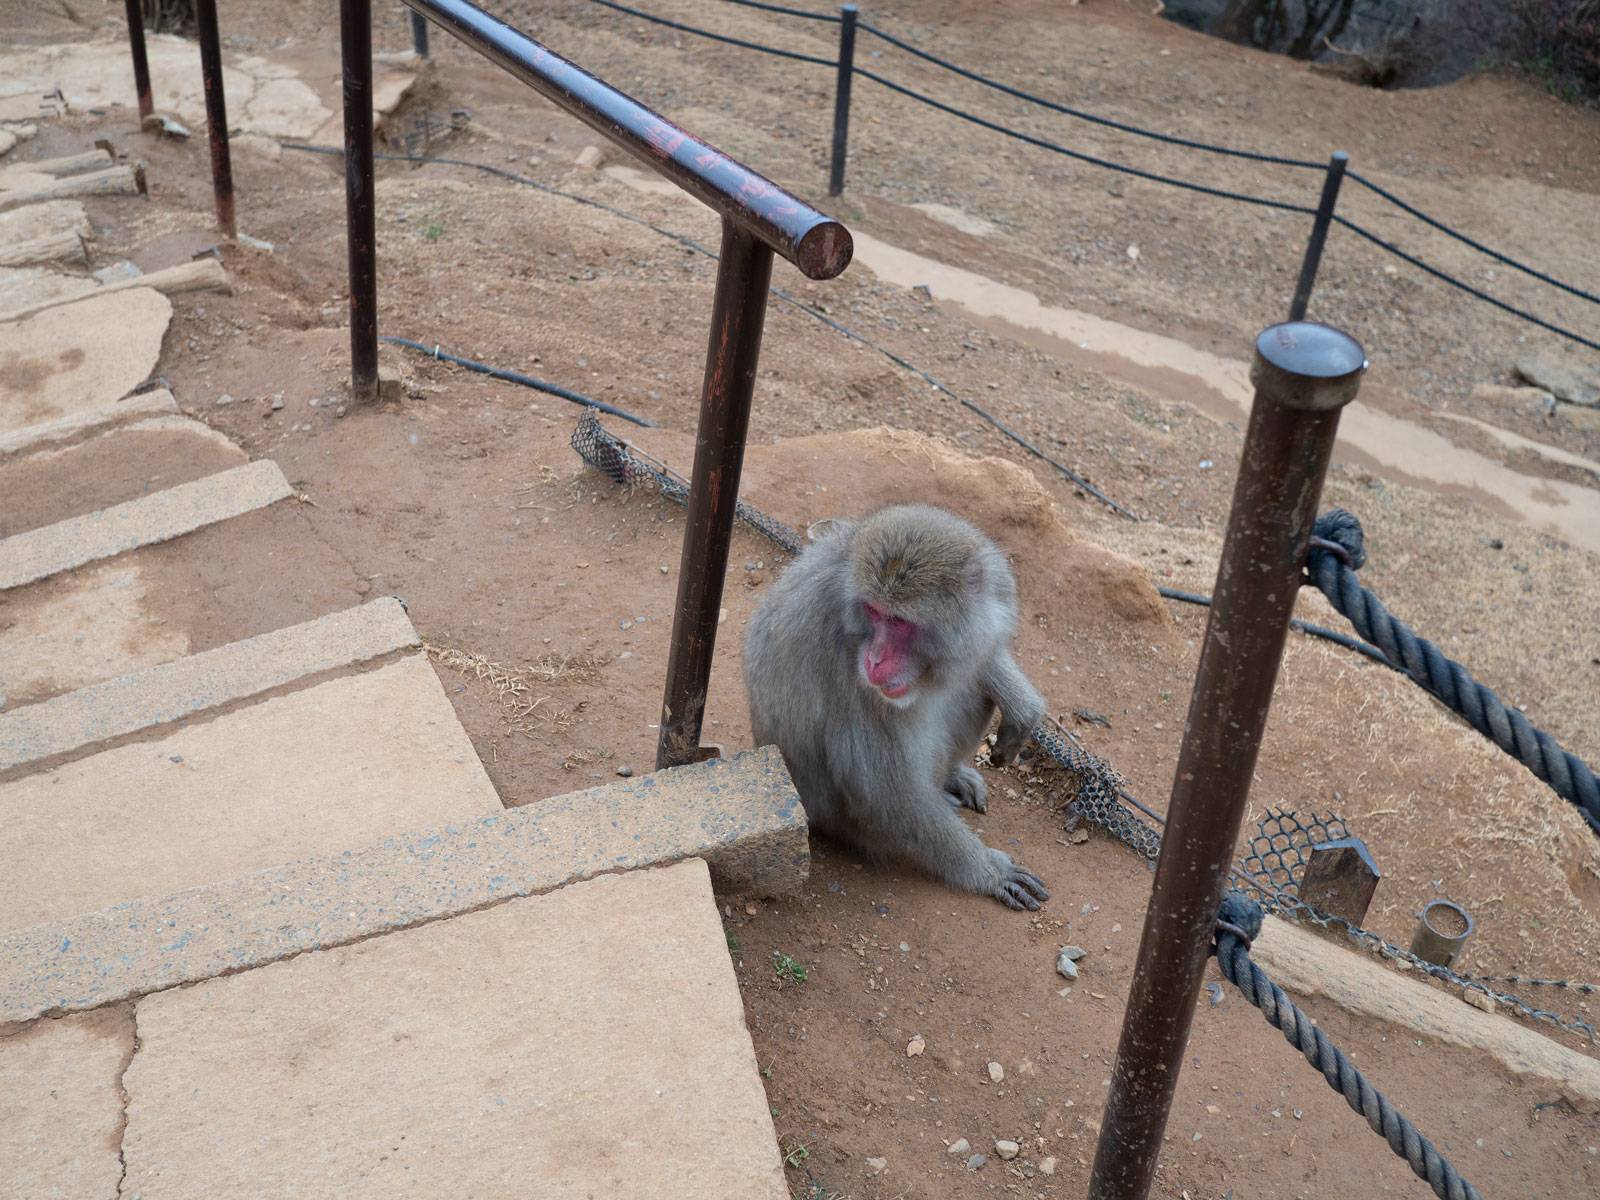 Monkey sitting next to steps